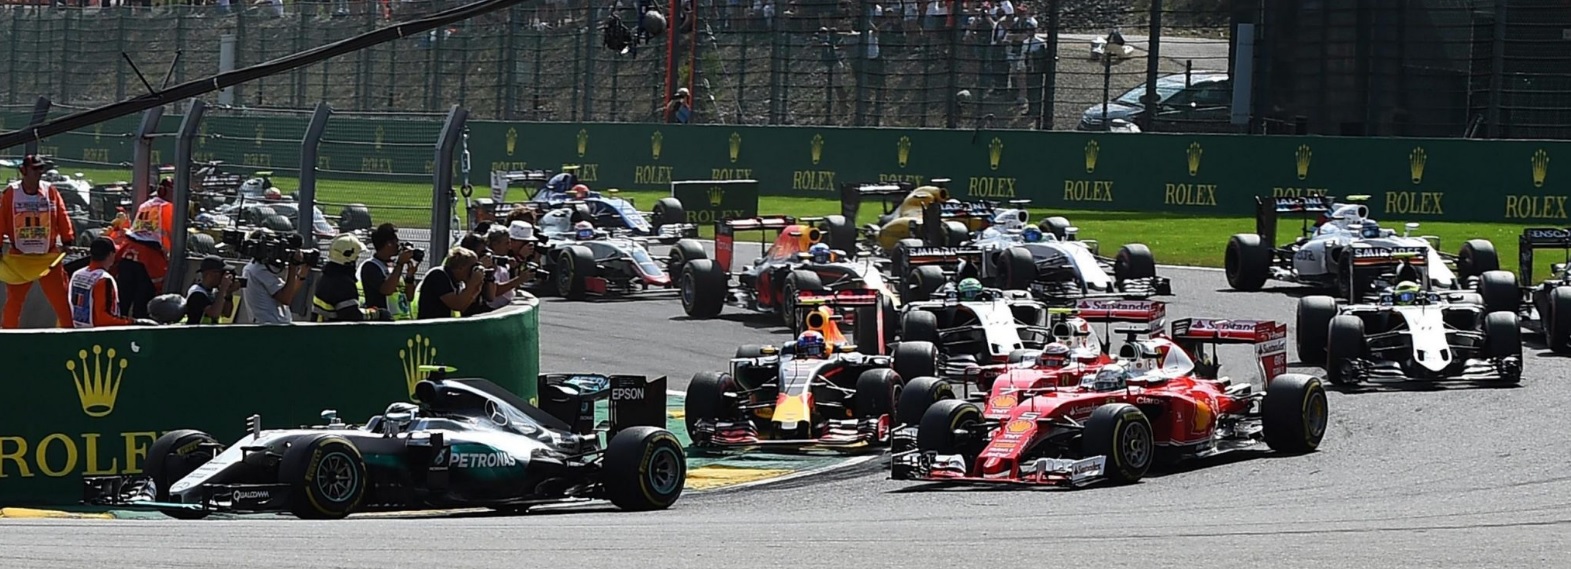 El duelo Hamilton-Vettel regresa en el GP de Bélgica tras las vacaciones